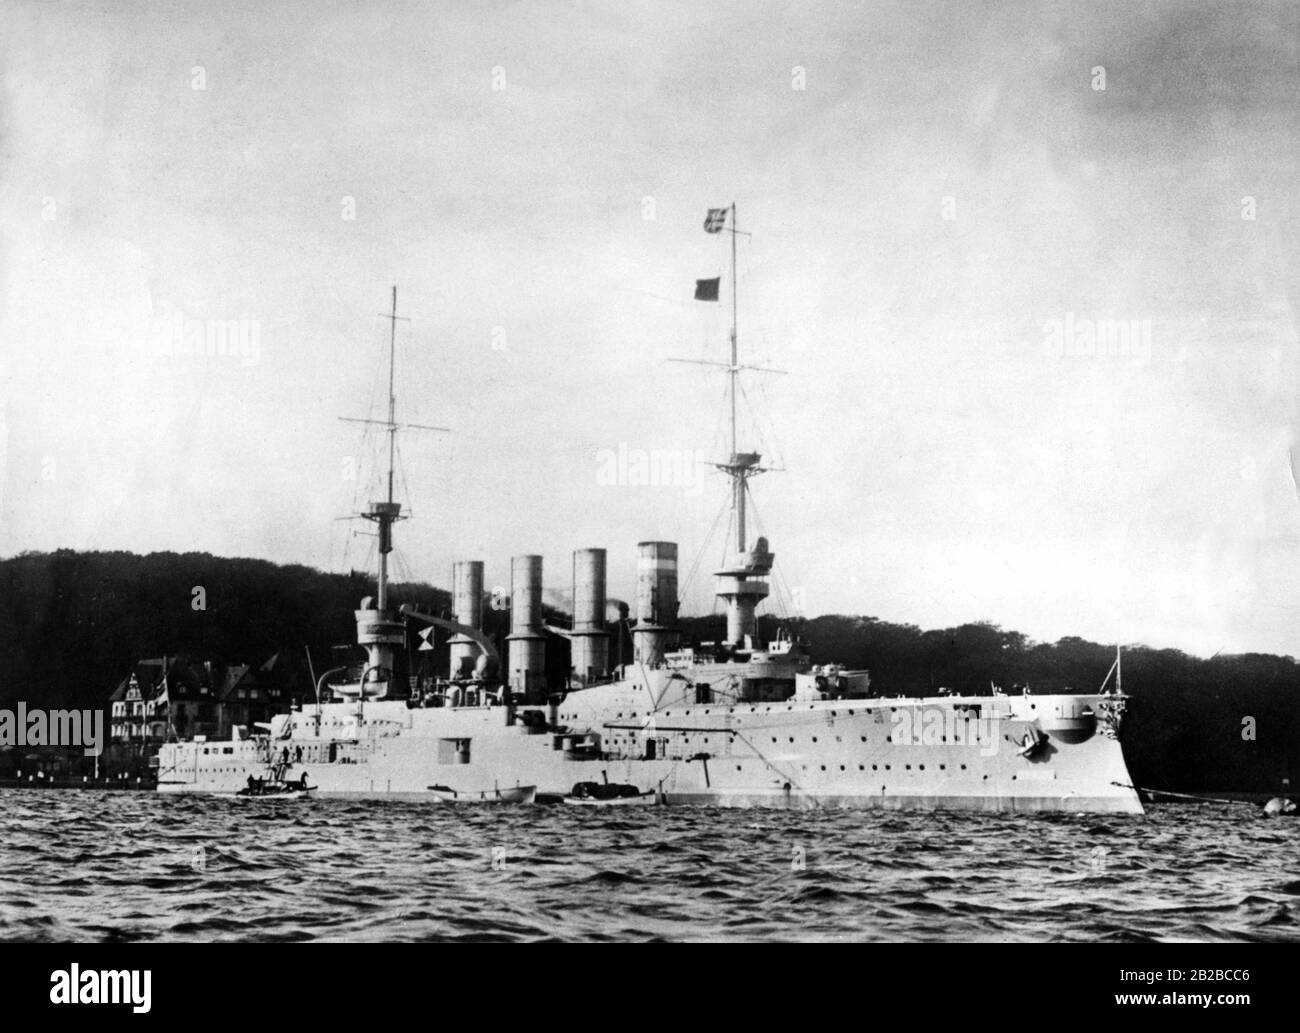 Le SMS Gneisenau, un grand croiseur de la Marine impériale, qui a été utilisé pendant la première Guerre mondiale. Il a pris part à la bataille navale dans les eaux chiliennes et y a été coulé en 1914. Il a été nommé d'après le maréchal prussien août Neidhardt von Gneisenau. Banque D'Images